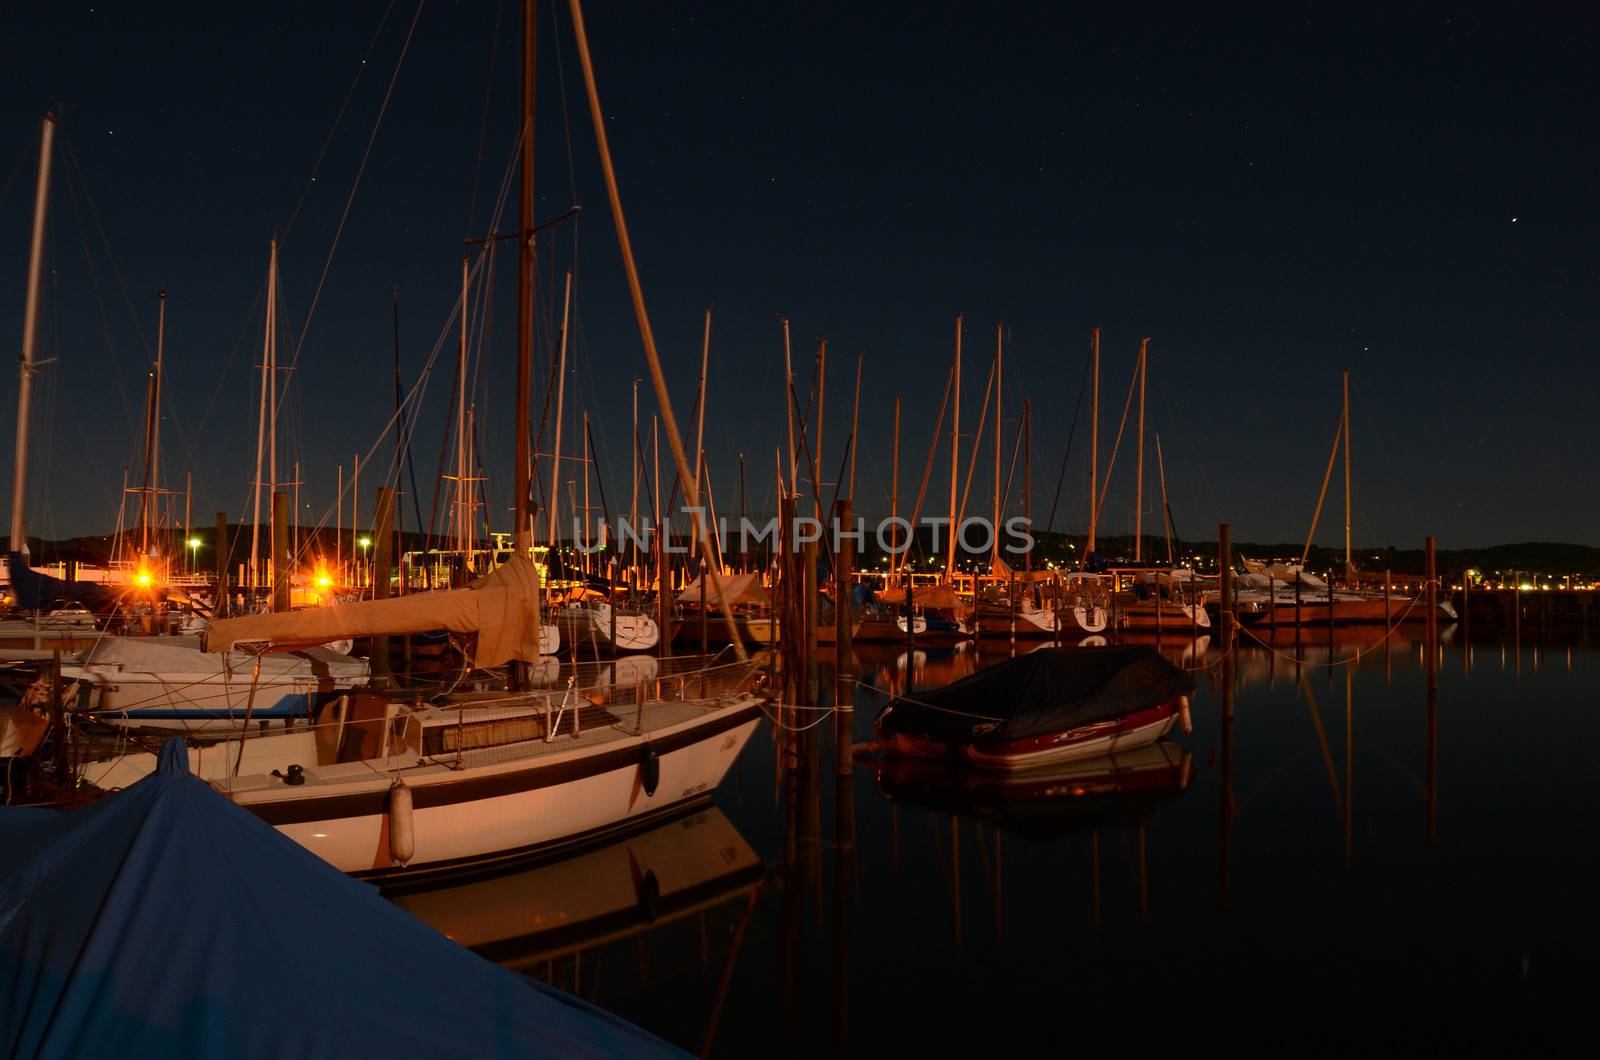 Sailing boats on a crisp, stary night at an italian marina